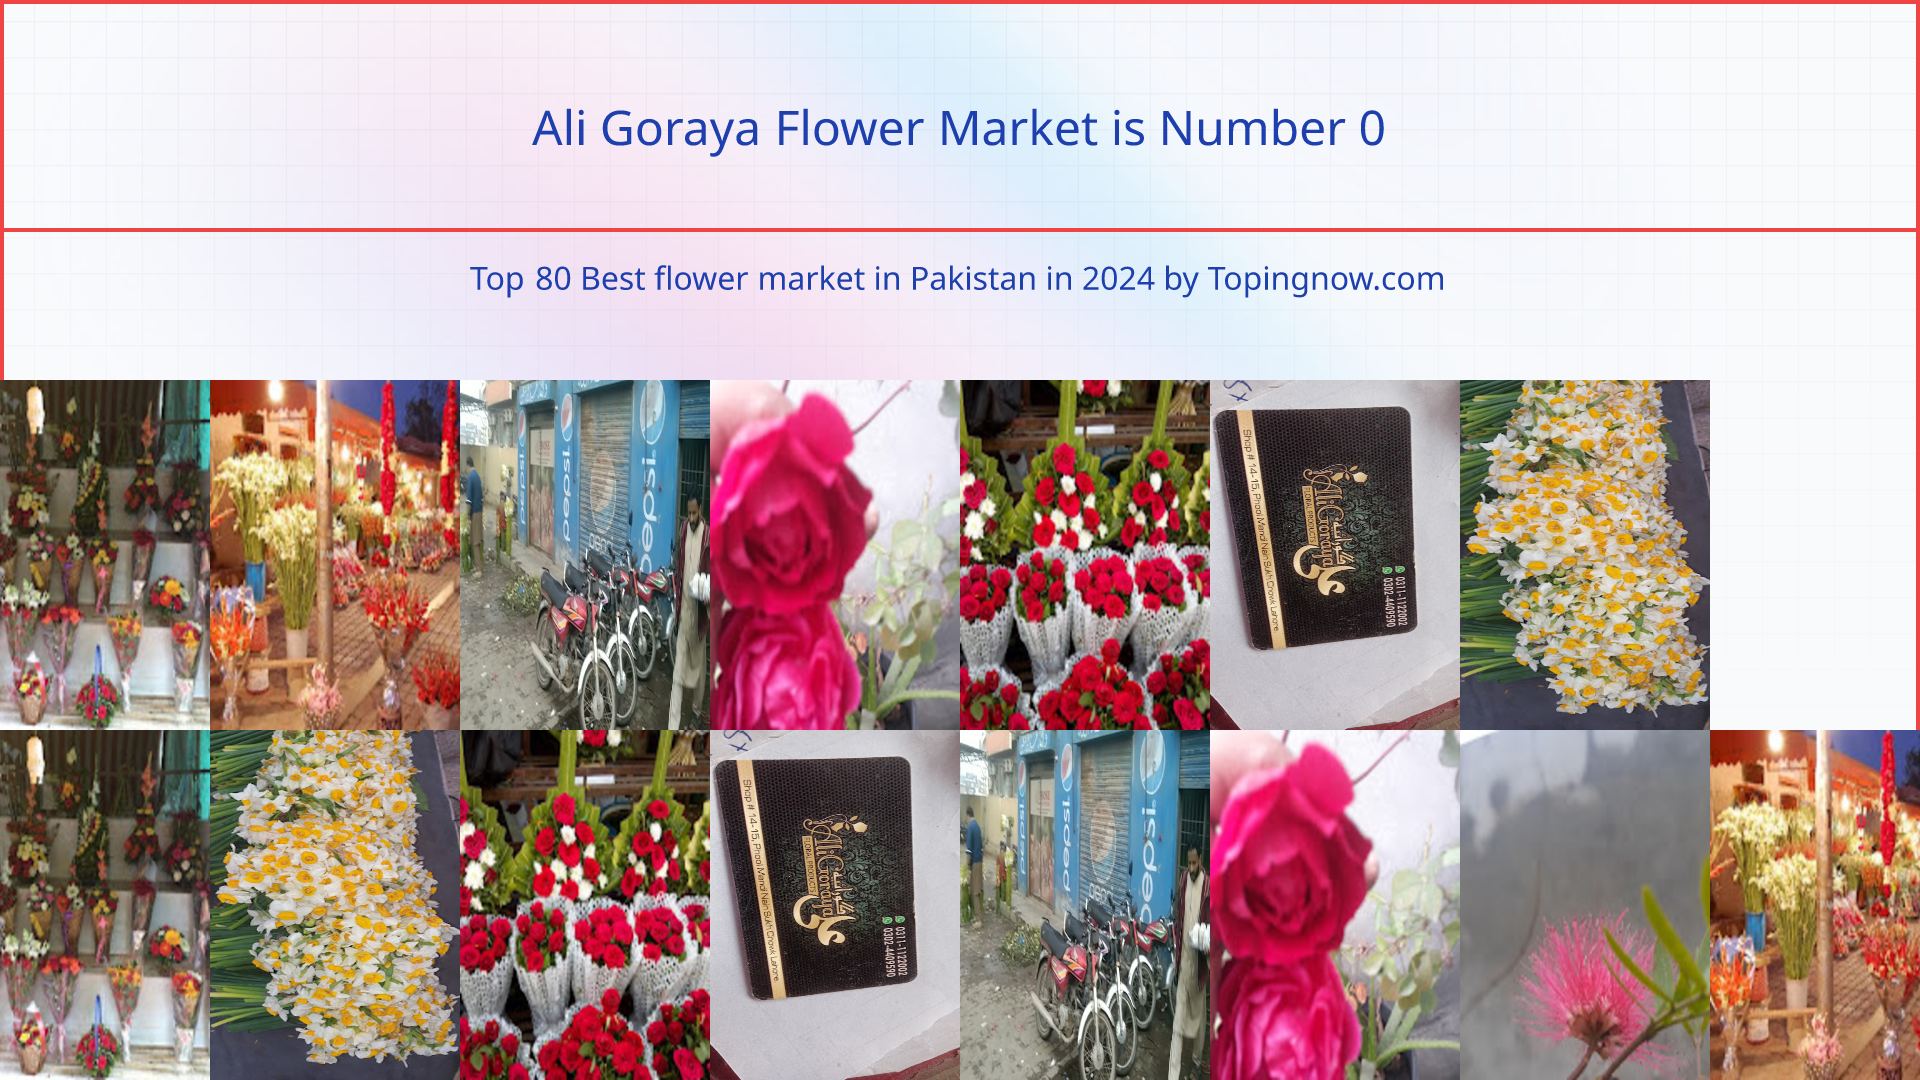 Ali Goraya Flower Market: Top 80 Best flower market in Pakistan in 2024